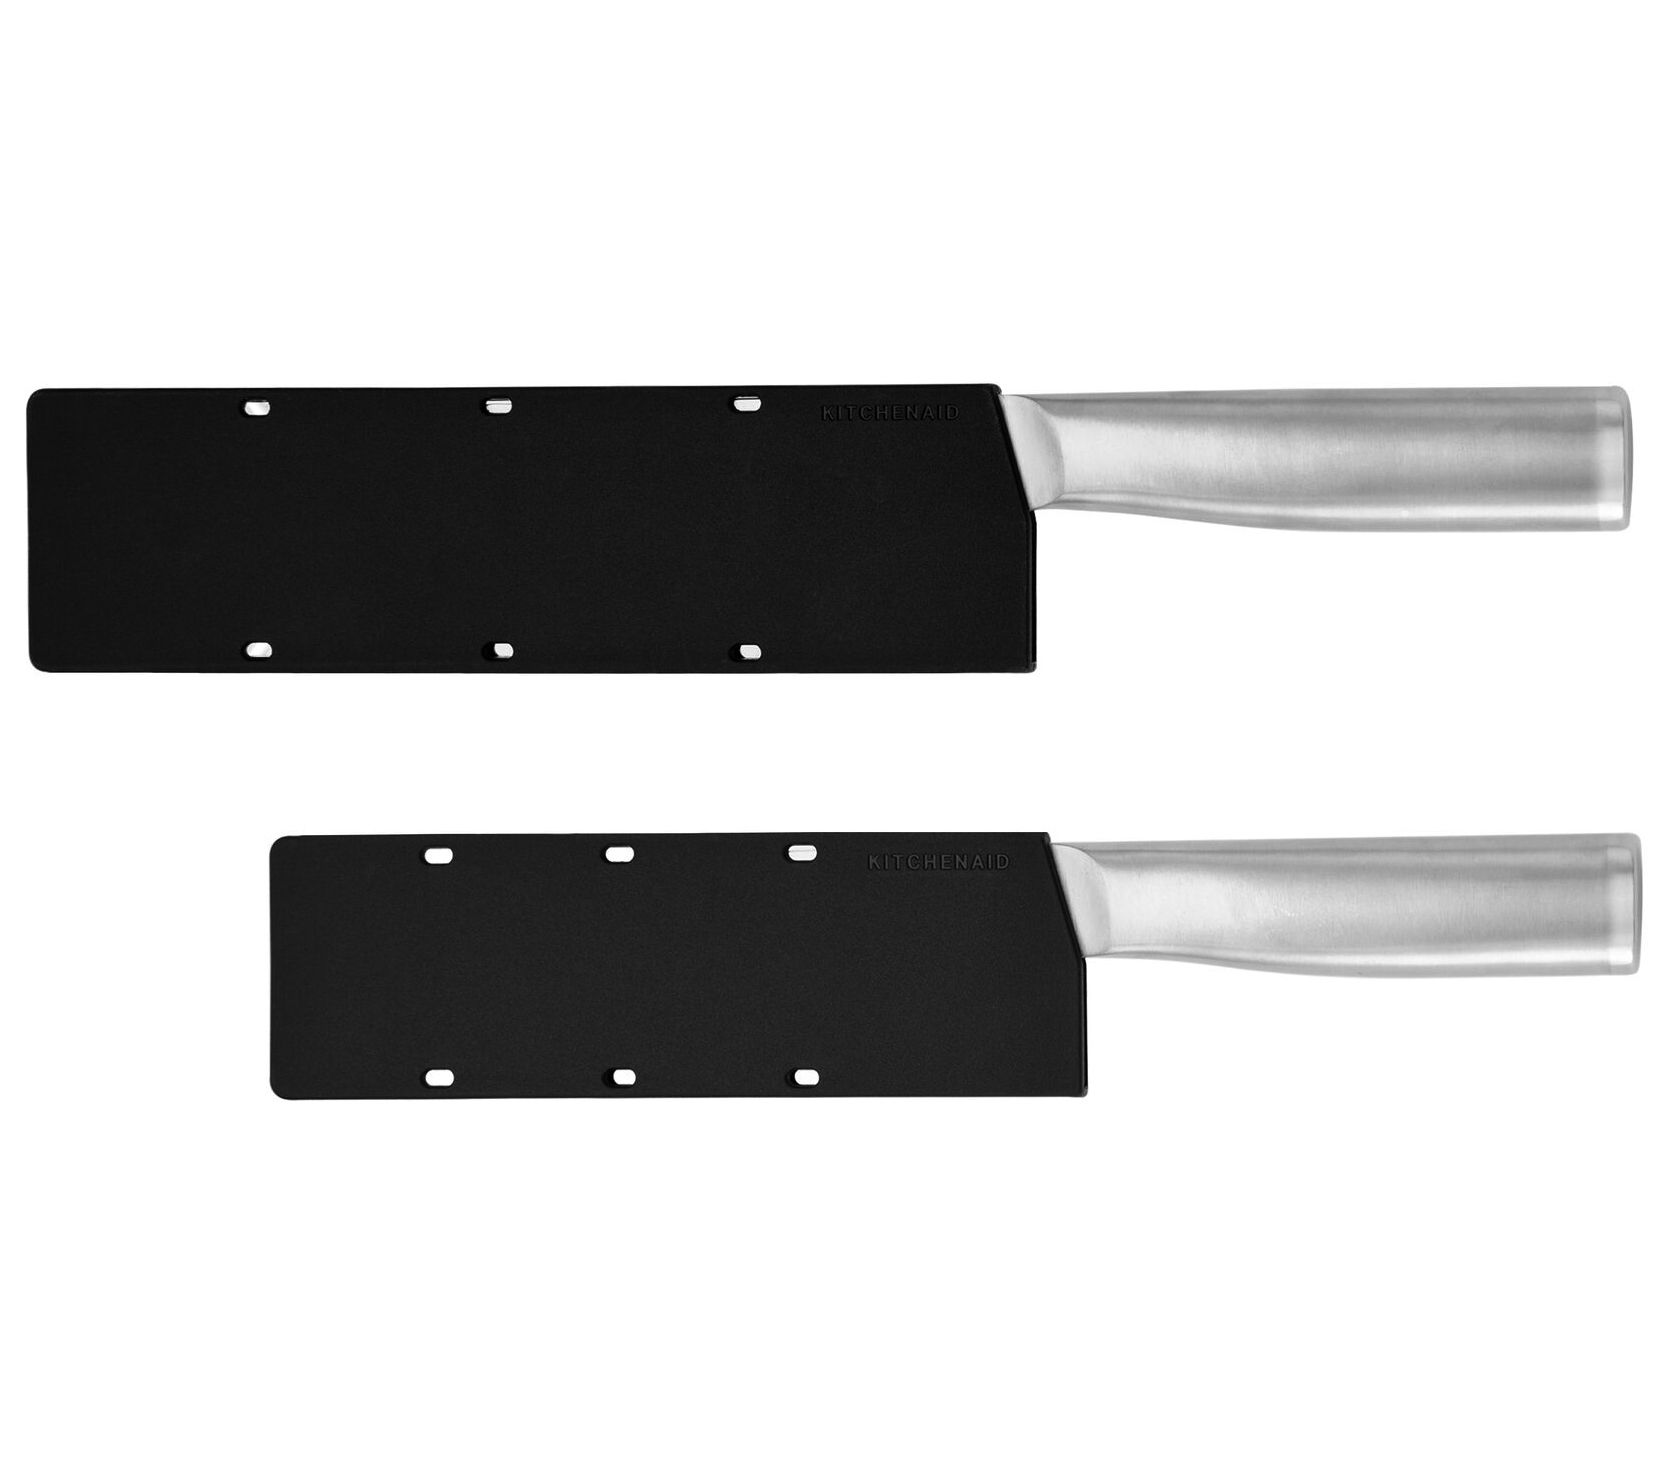 KitchenAid Santoku Knife Set Infused Stainless Steel Blade Triple